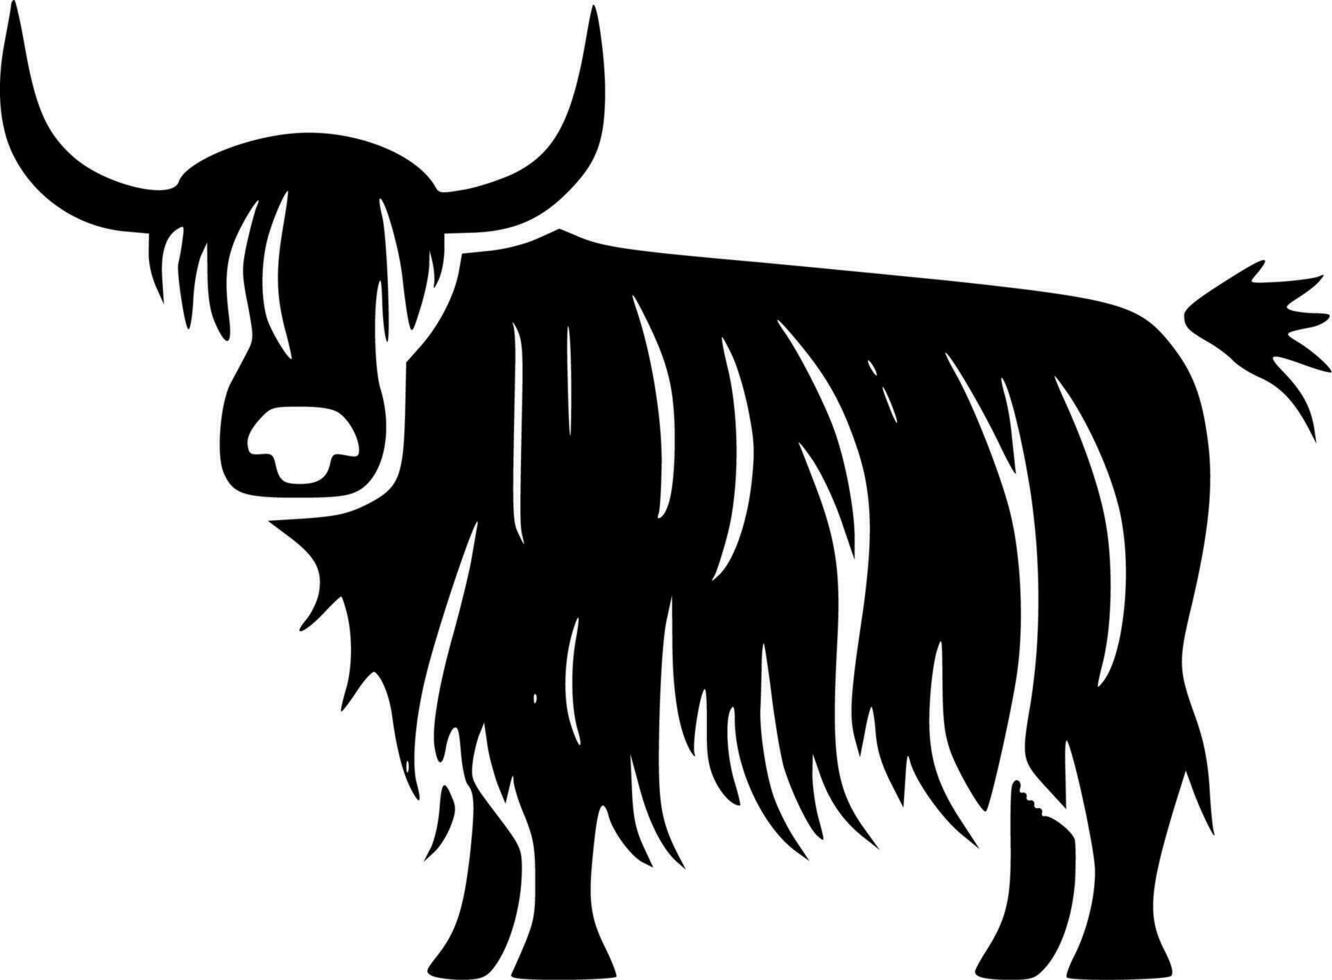 montanaro mucca, nero e bianca vettore illustrazione